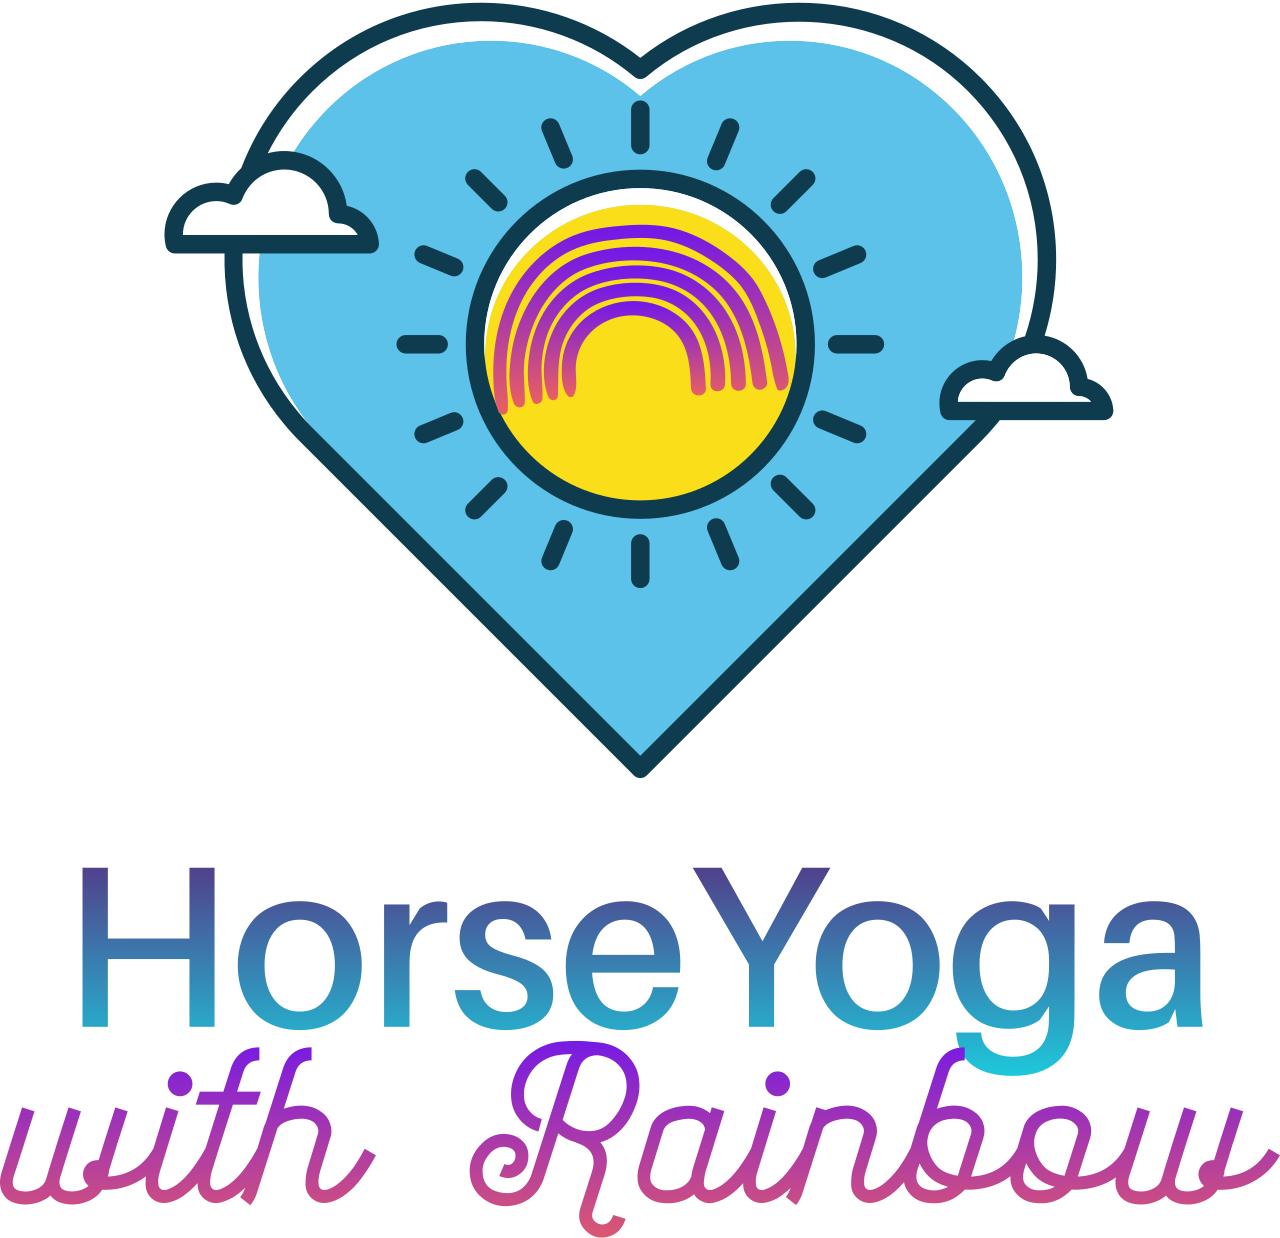 HorseYoga's logo